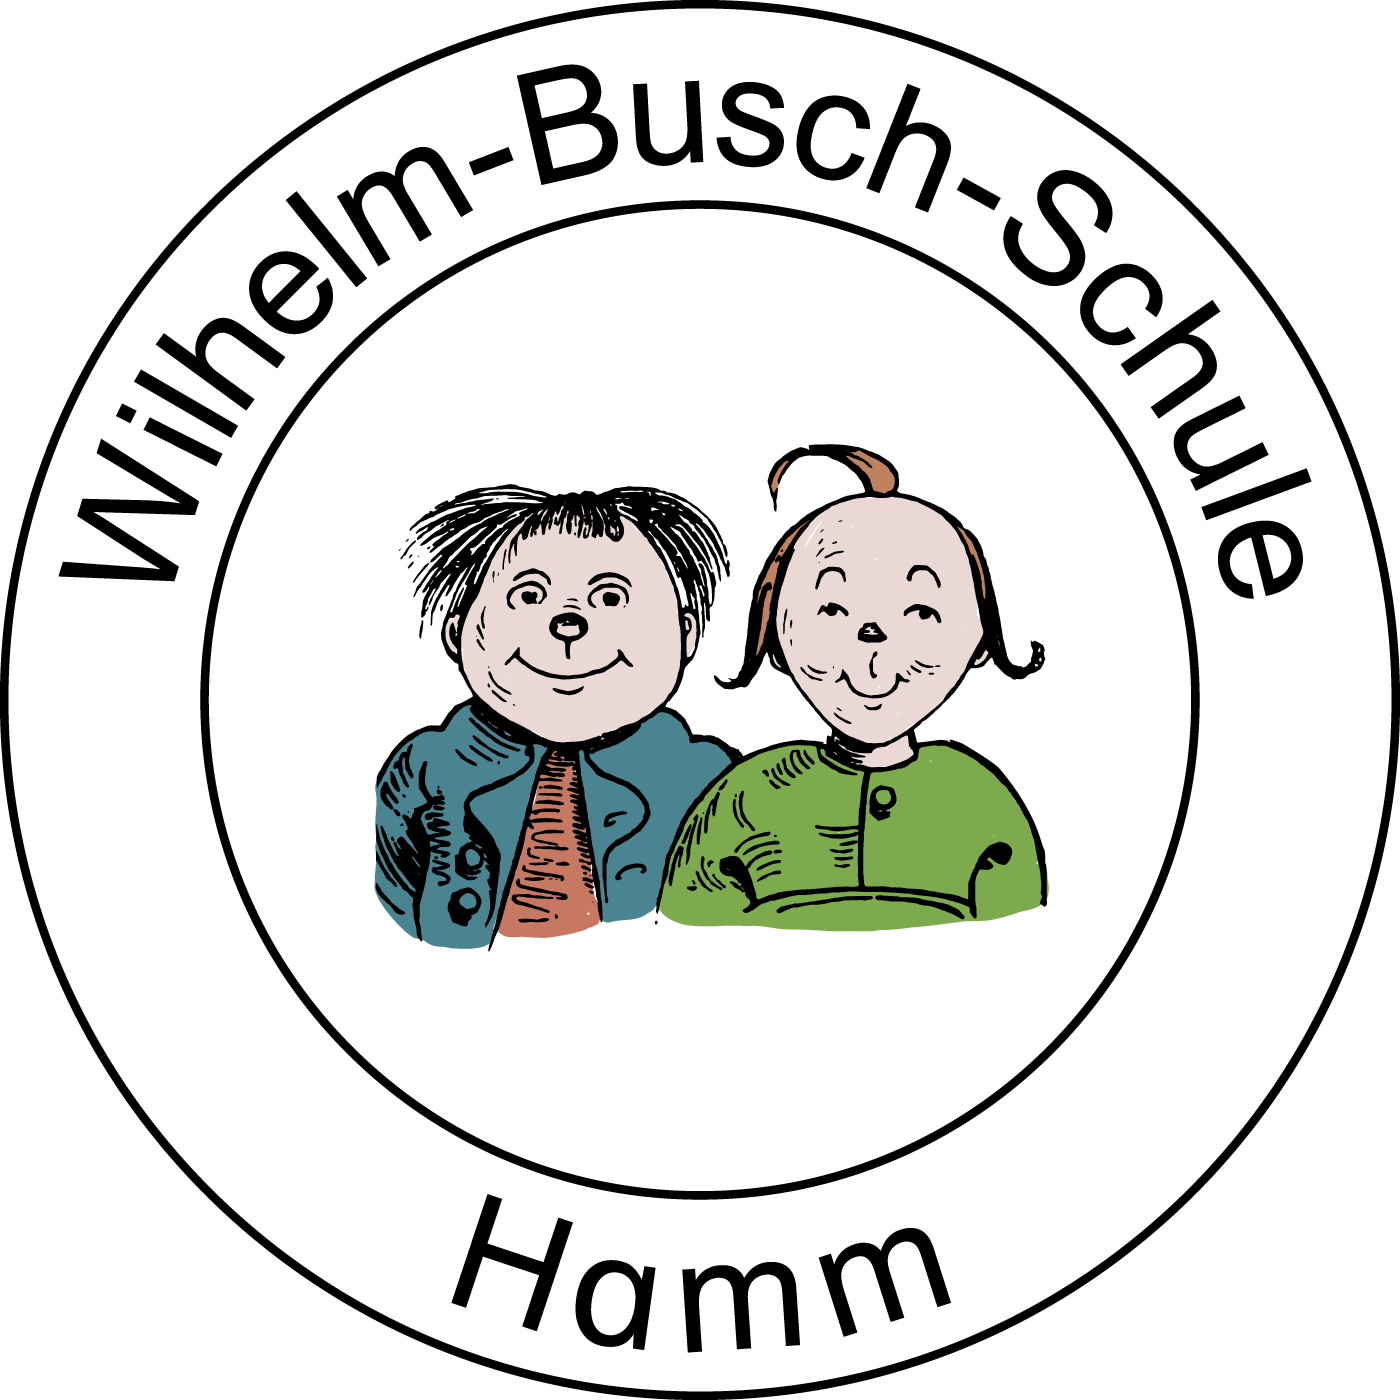 Wilhelm-Busch-Schule Hamm